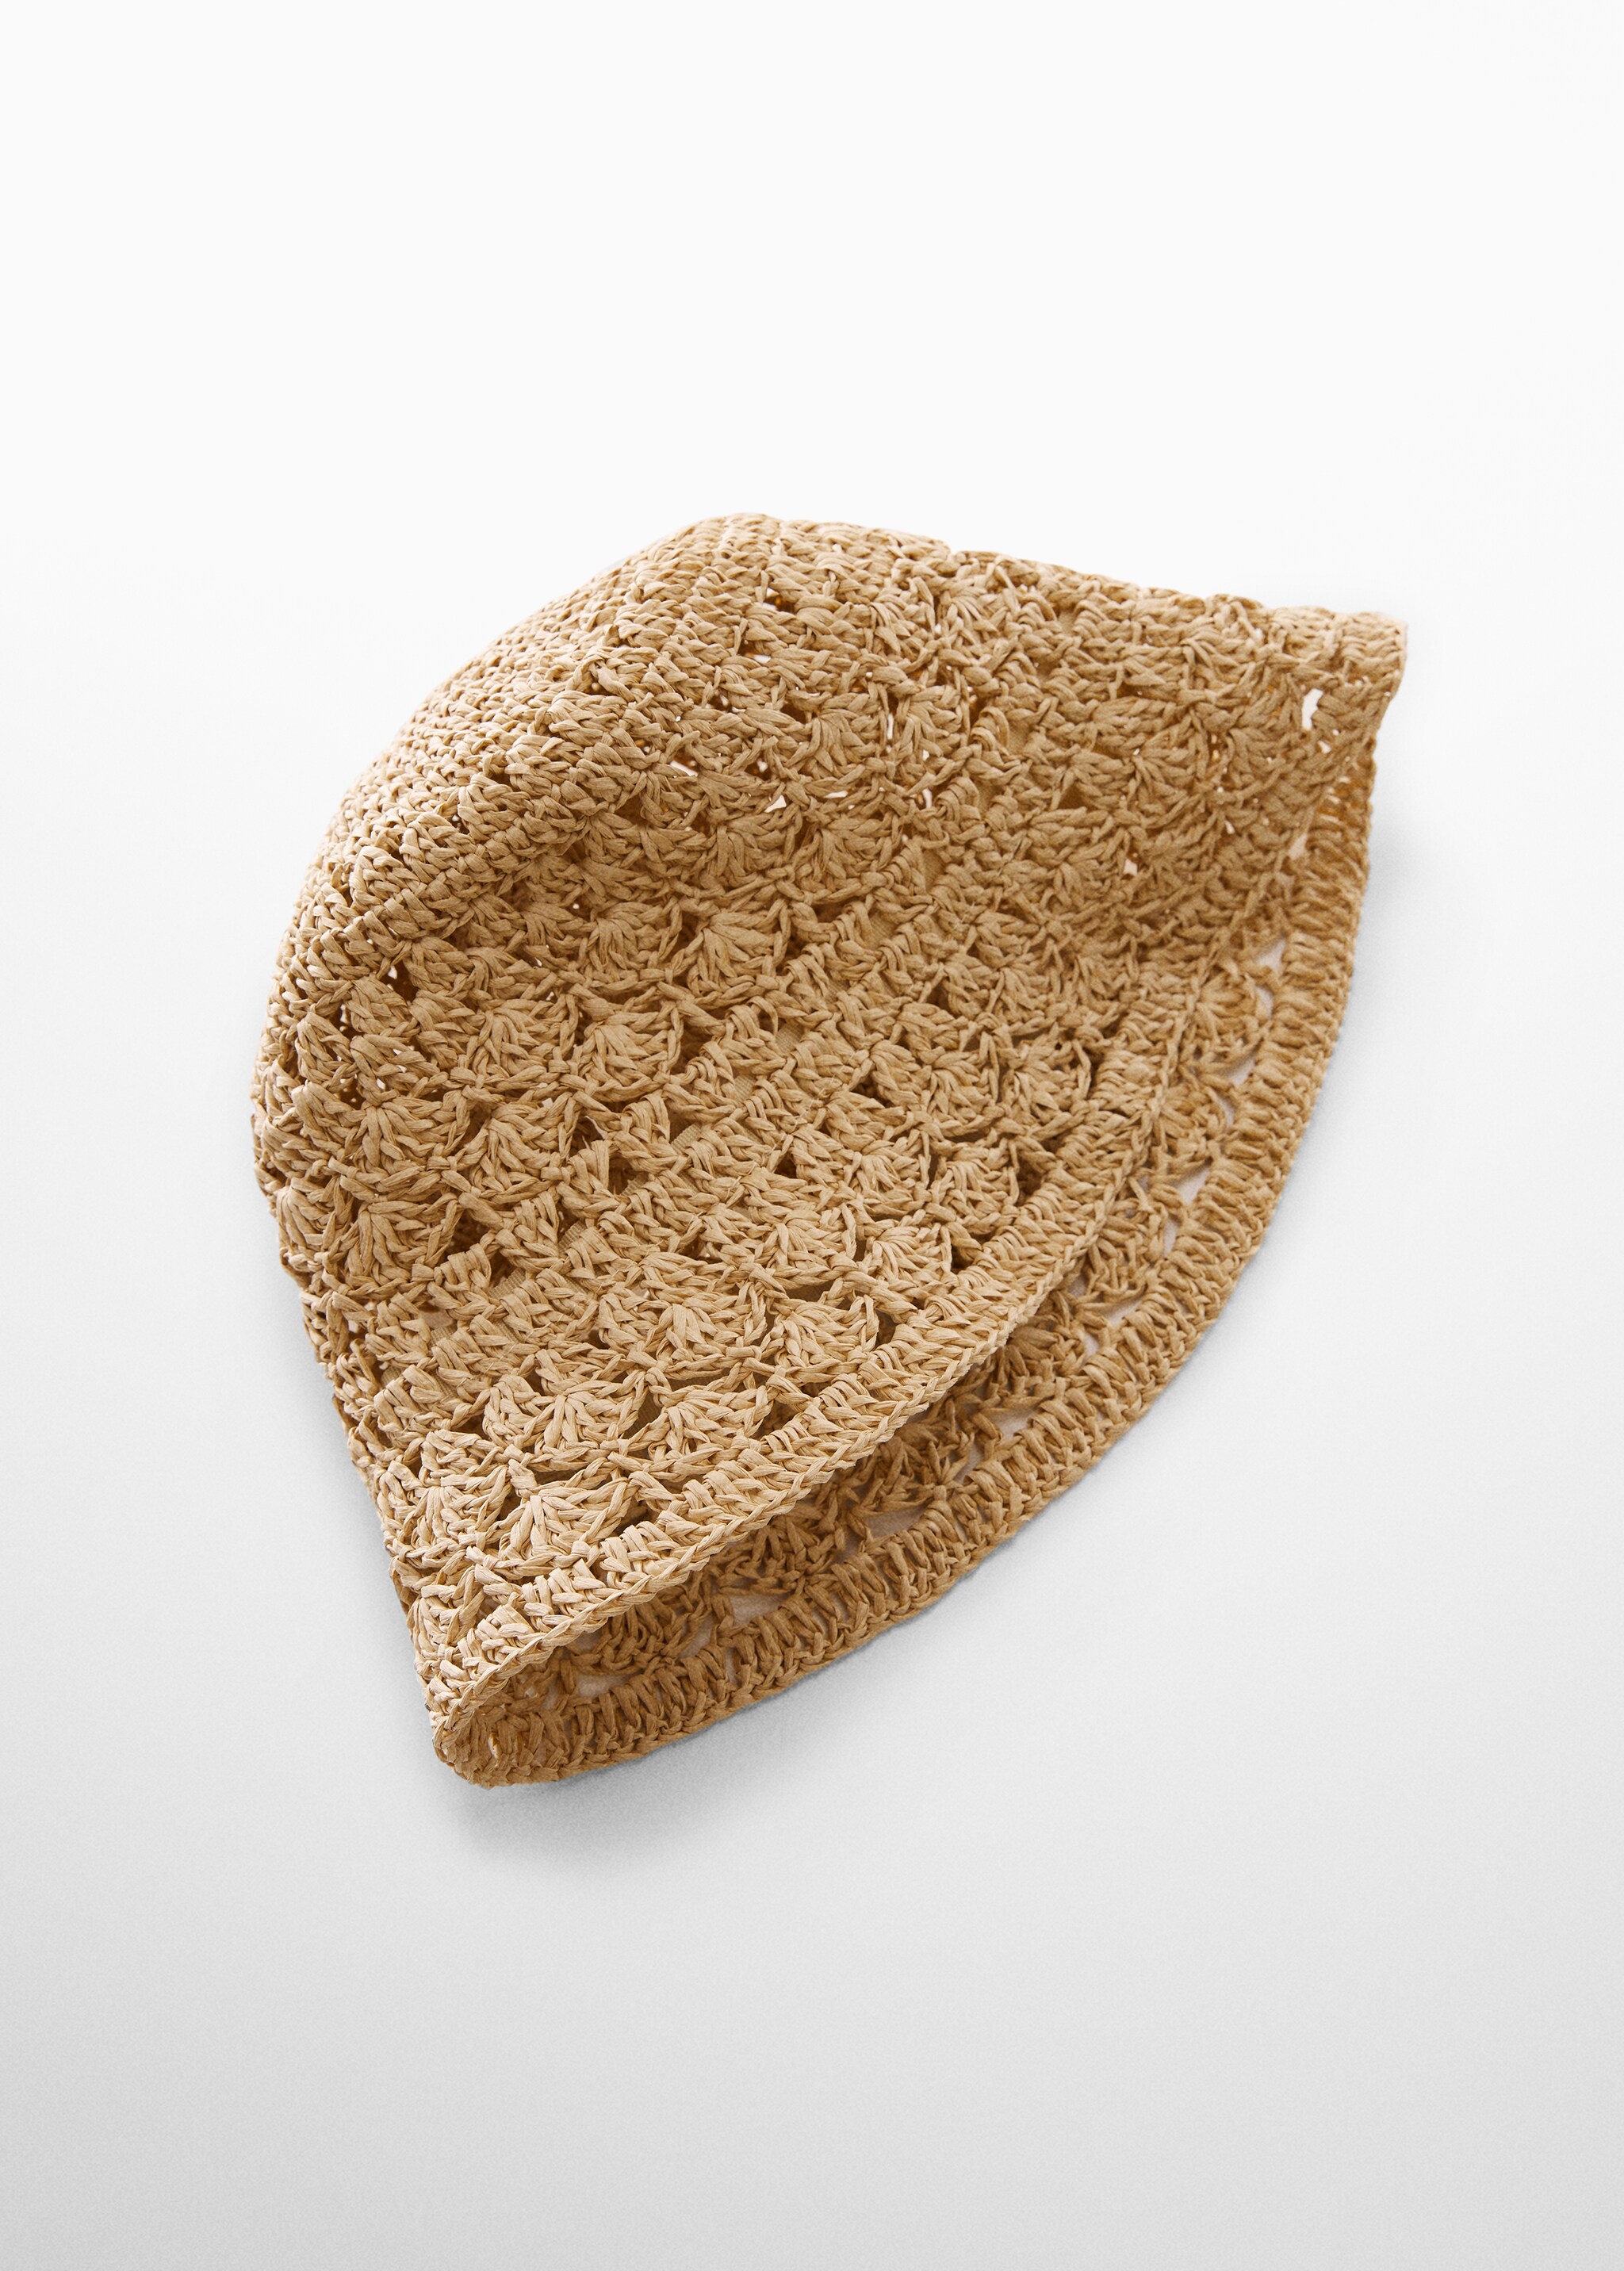 Sombrero fibra natural - Plano medio